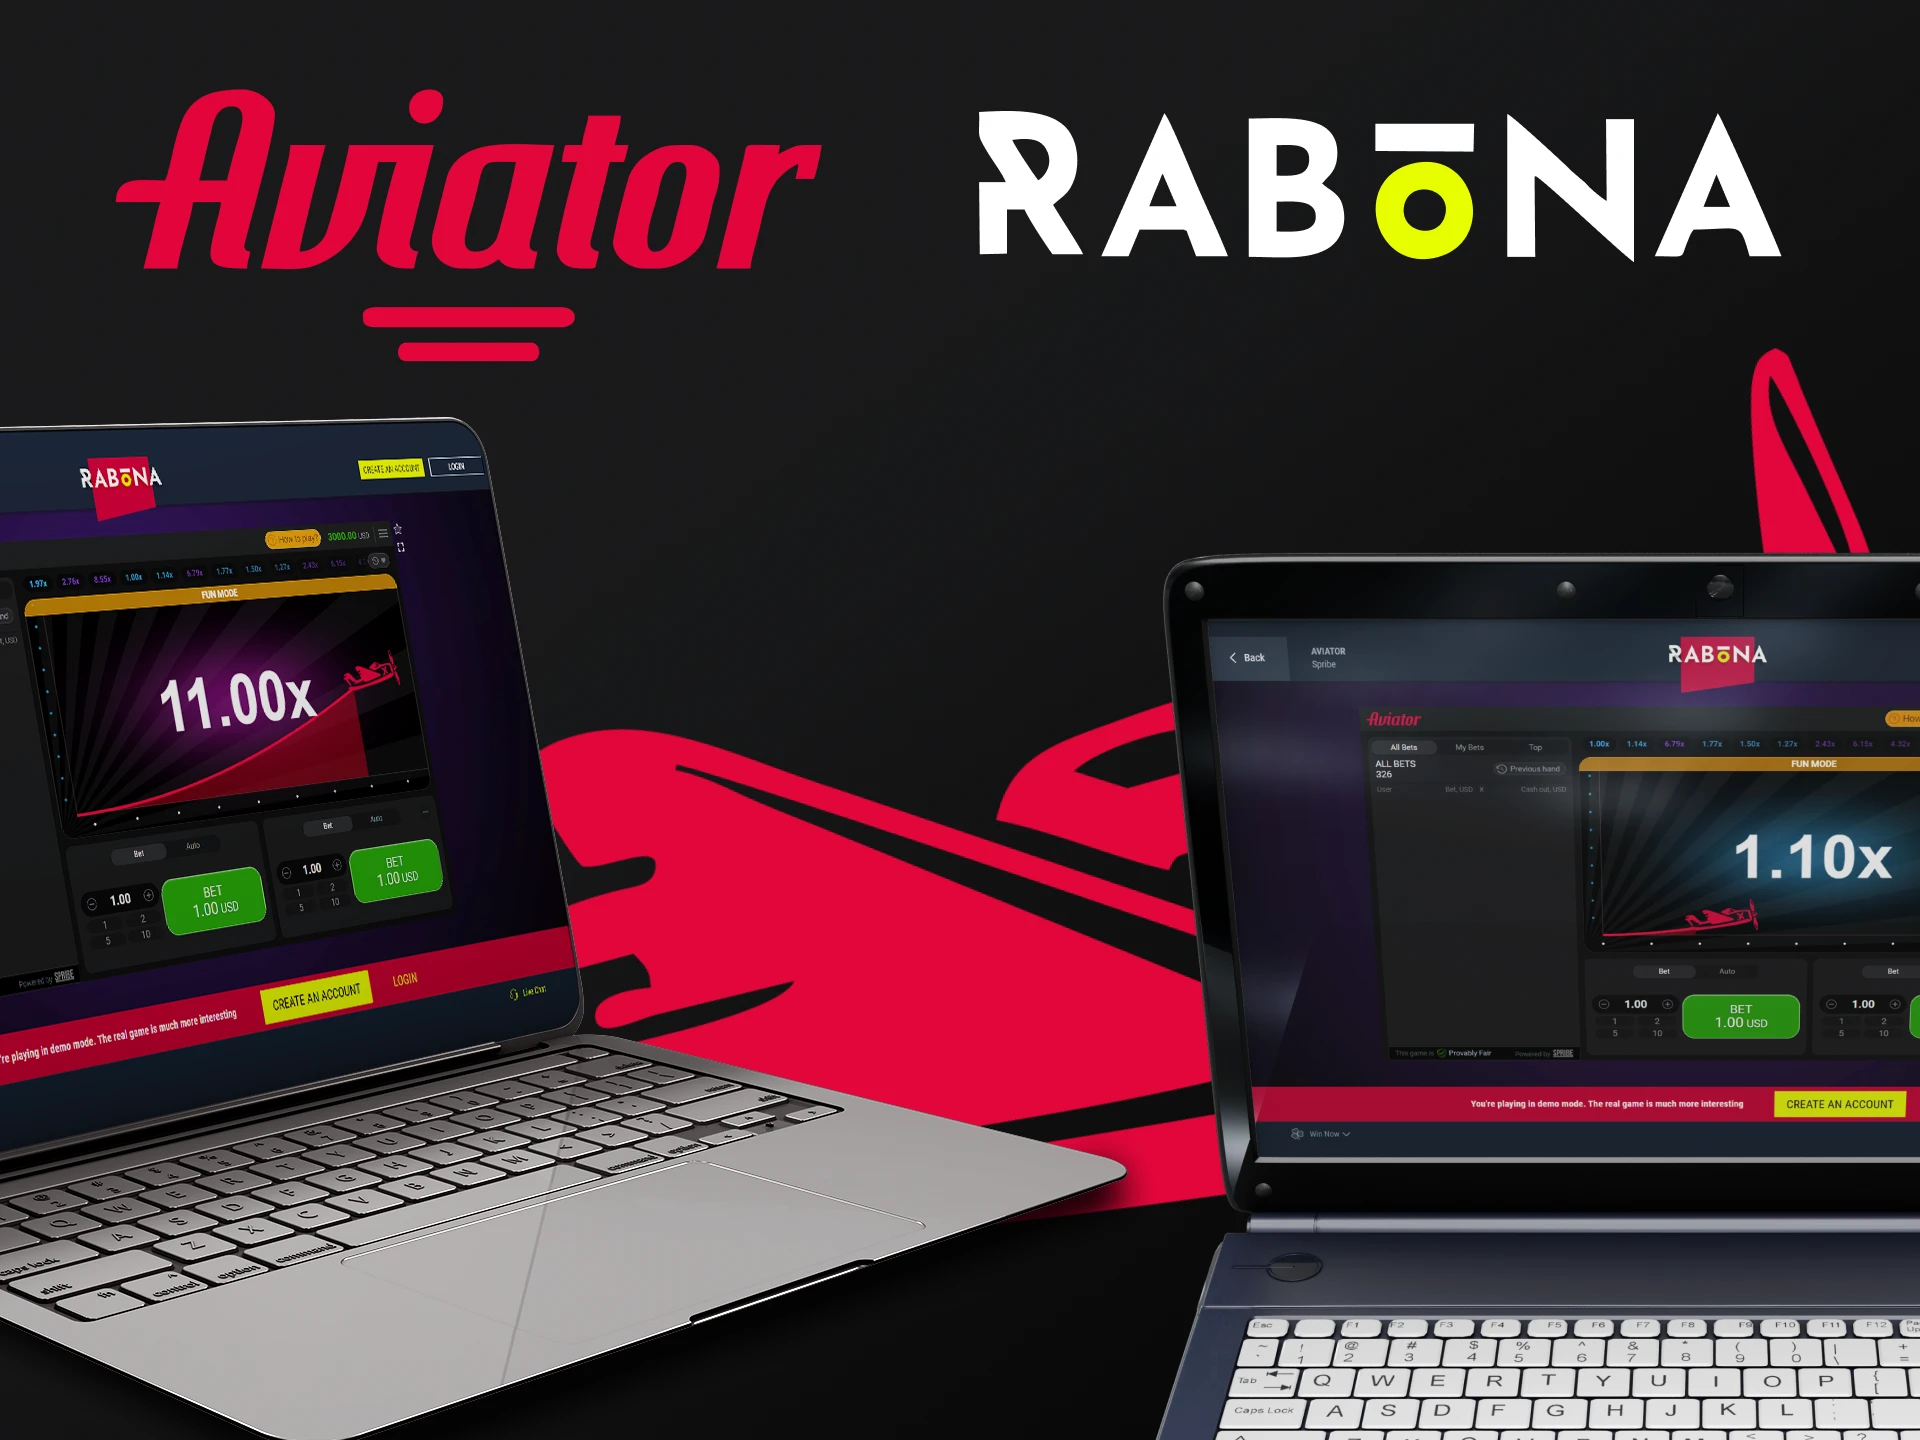 Escolha um dispositivo para jogar Aviator no site Rabona.